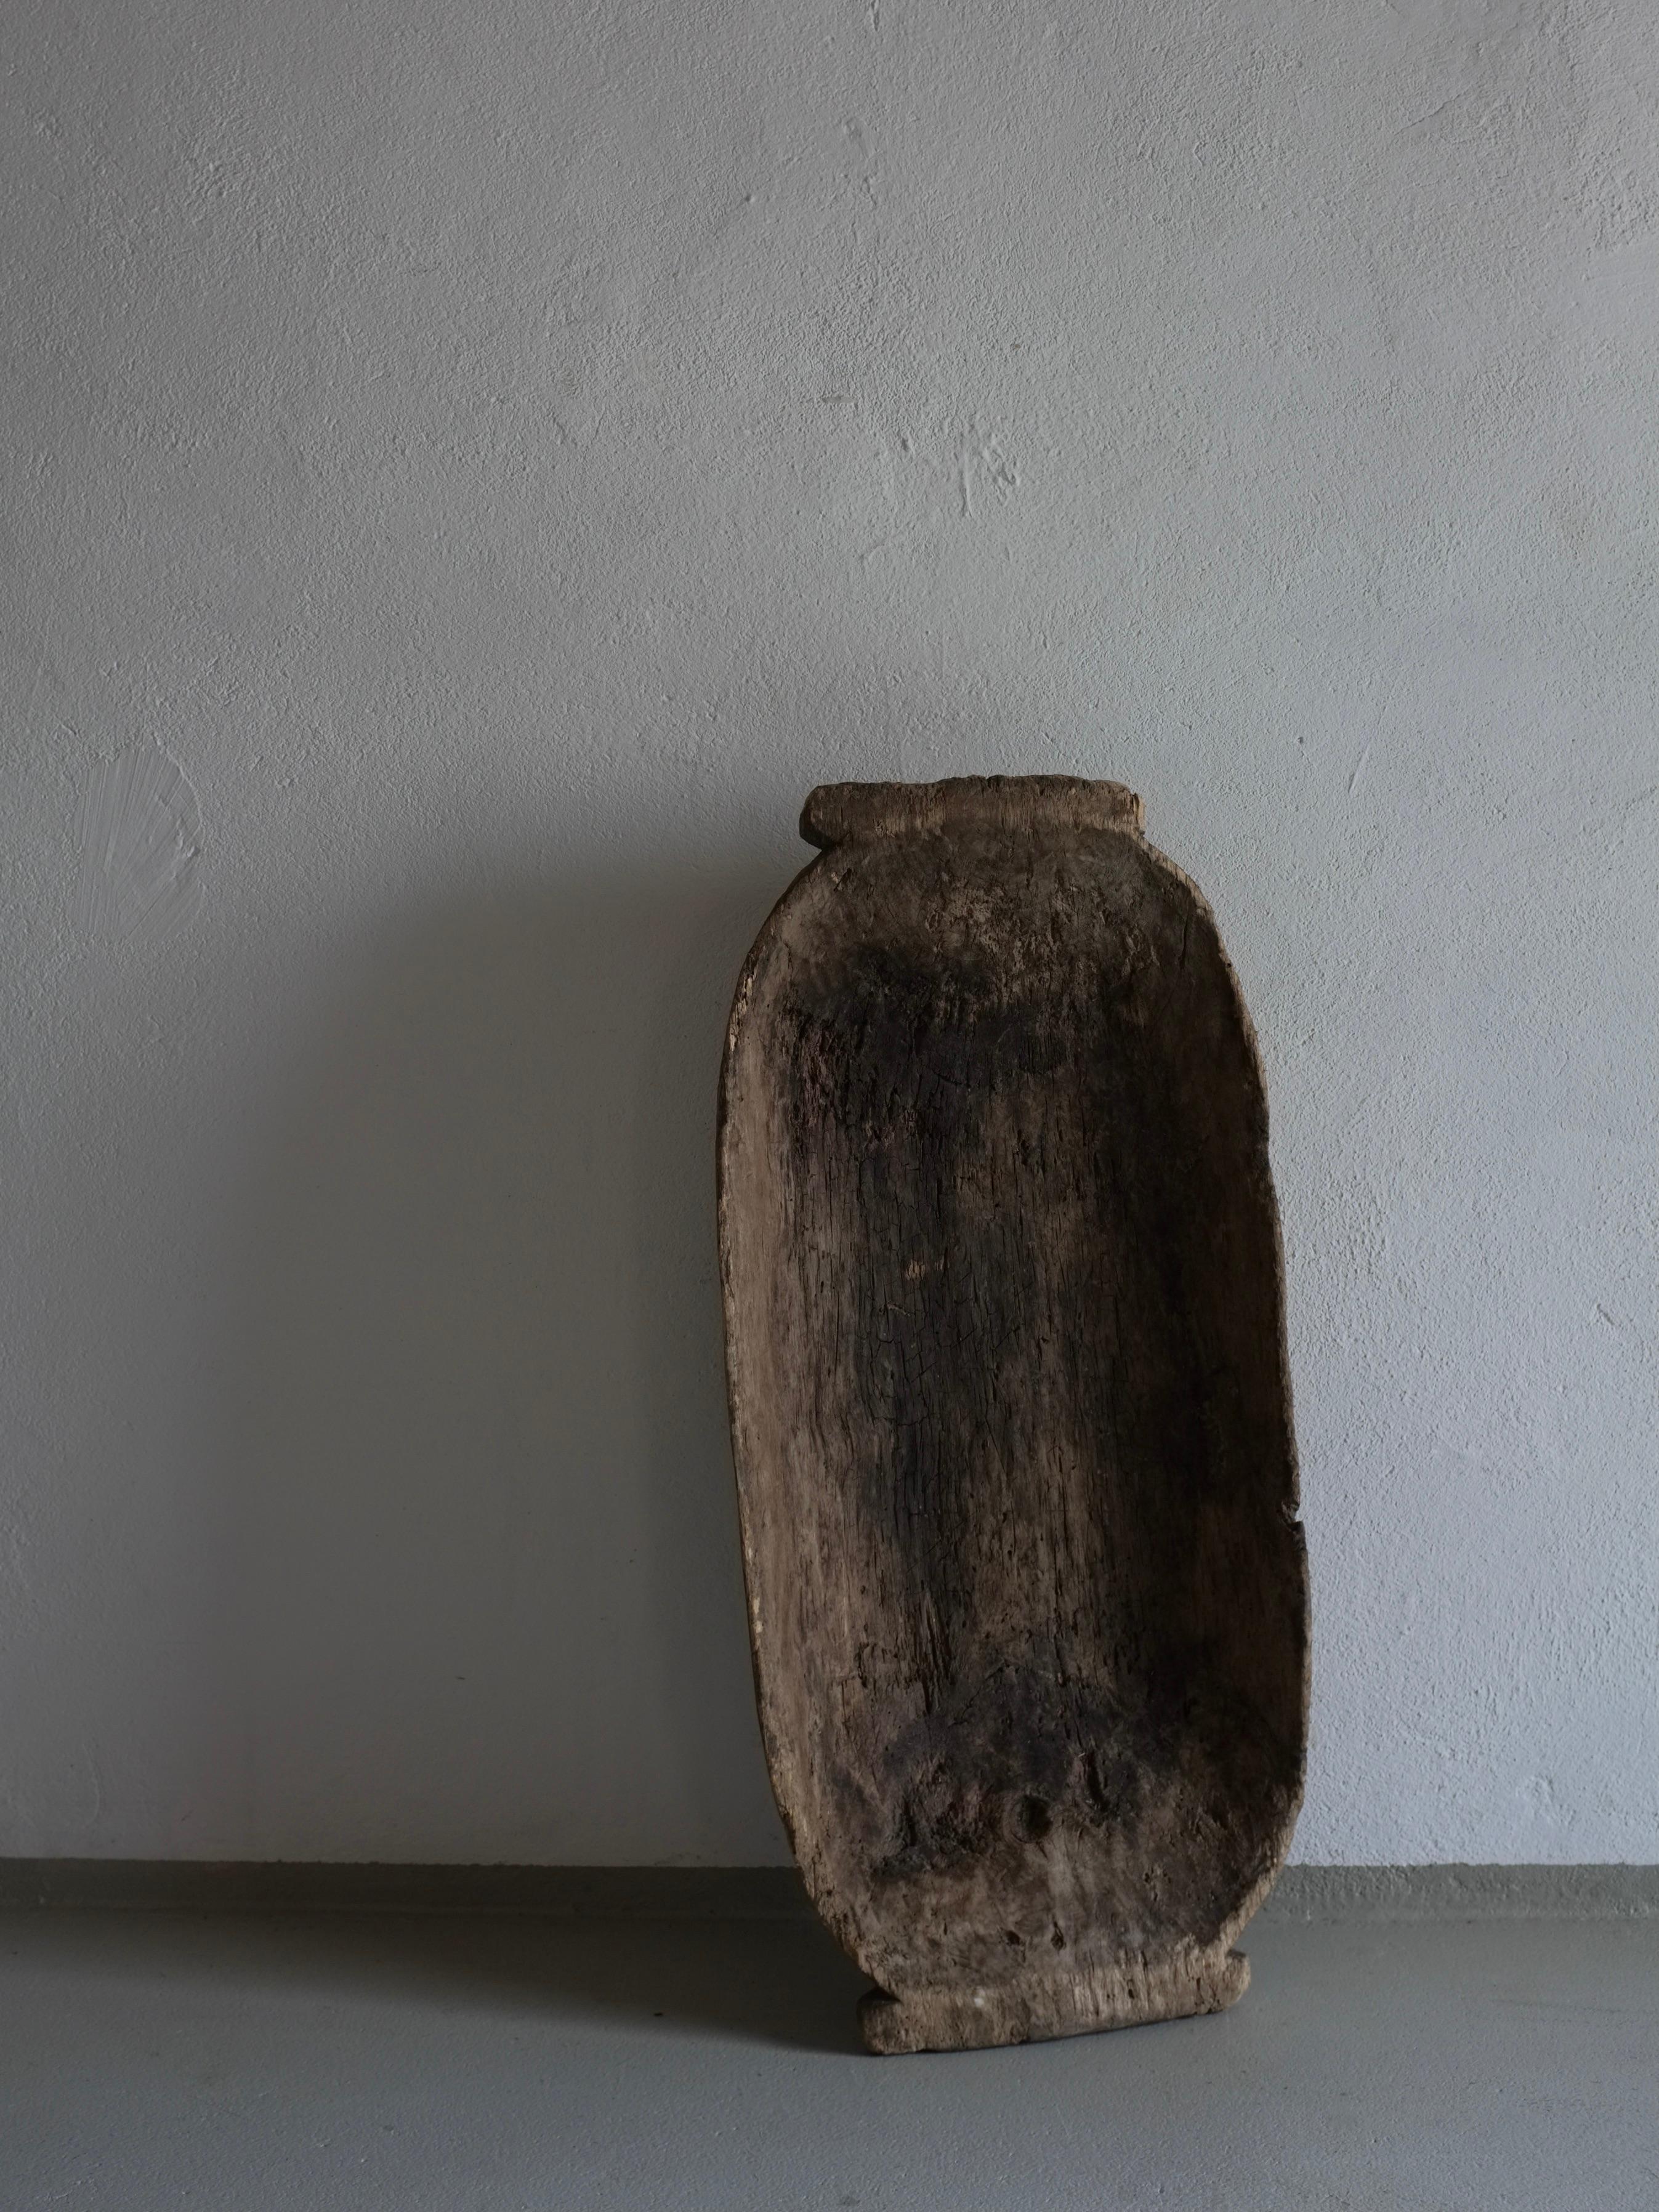 Ancien bol primitif en bois sculpté (#4) avec une belle patine. Bois vieilli, voir les photos.

Informations complémentaires :
Origine : Lettonie
Dimensions : L 60 cm x P 28 cm x H 9,5 cm 